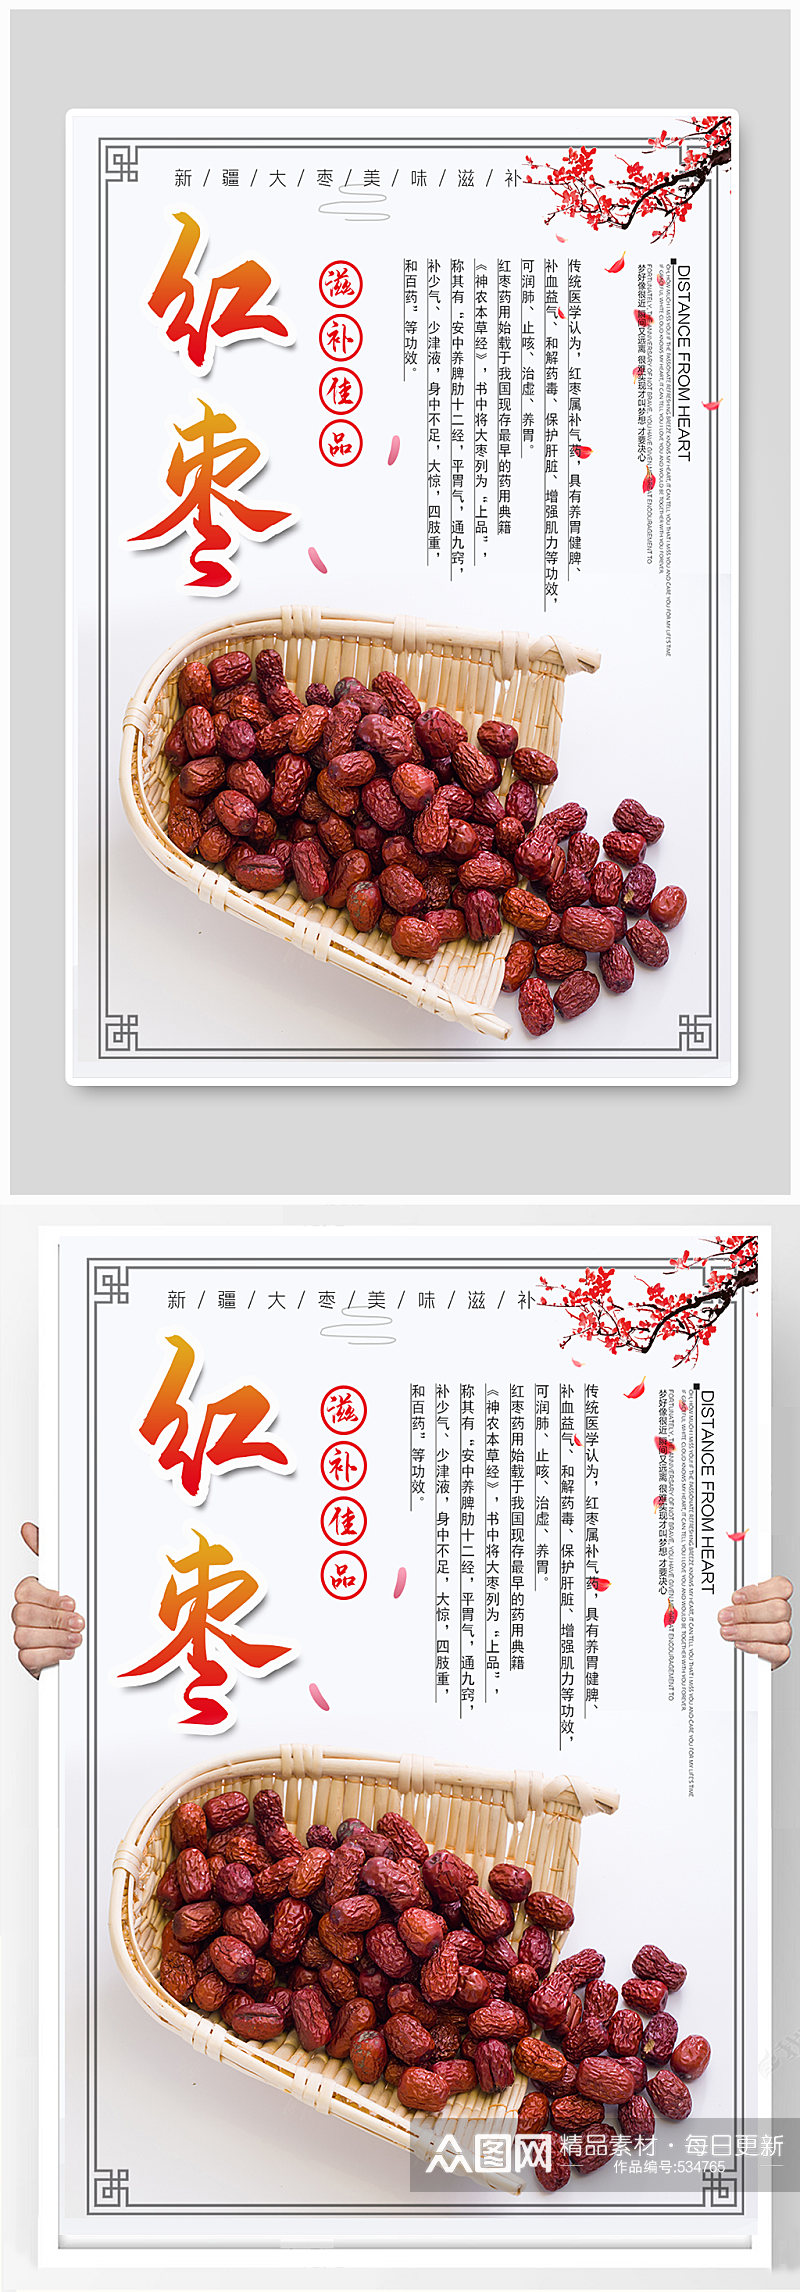 秋季红枣水果宣传海报素材